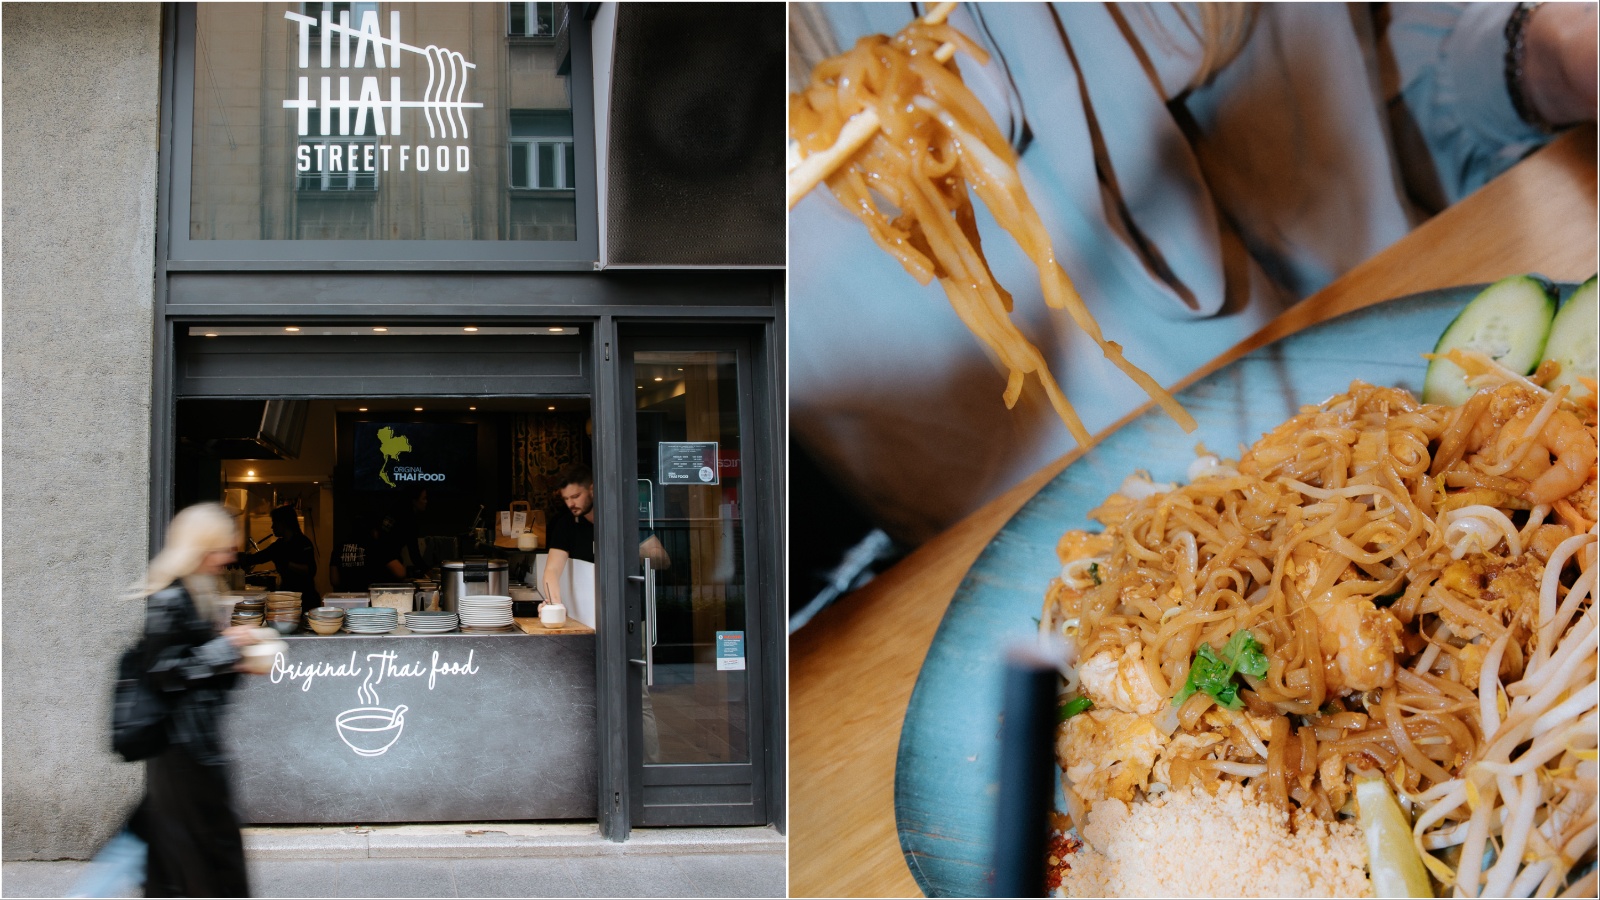 Zagreb je dobio precool street food restoran s originalnom tajlandskom kuhinjom